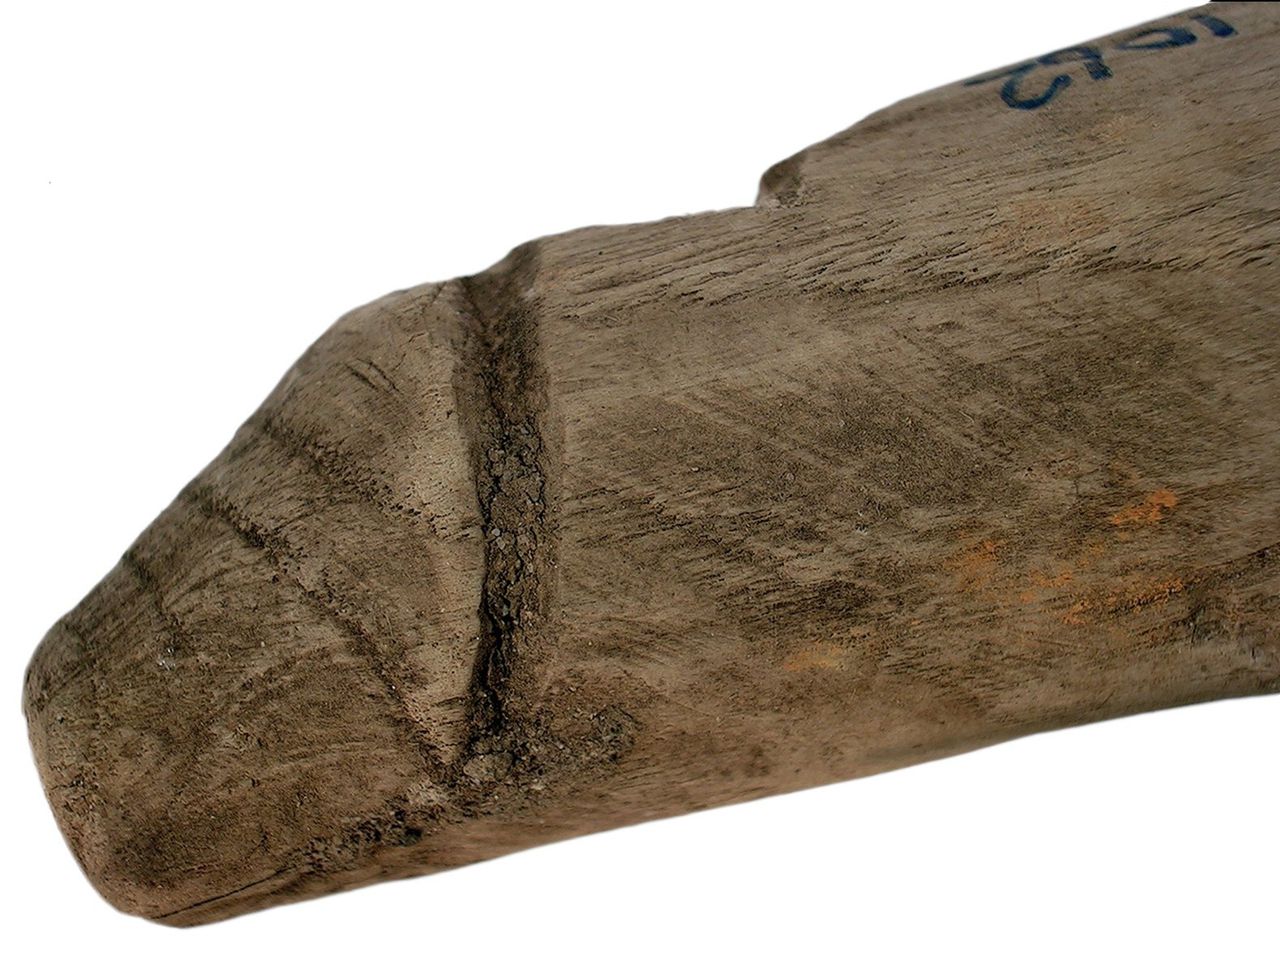 Archeologen vinden een Romeinse houten penis ‘met gebruikssporen’ 